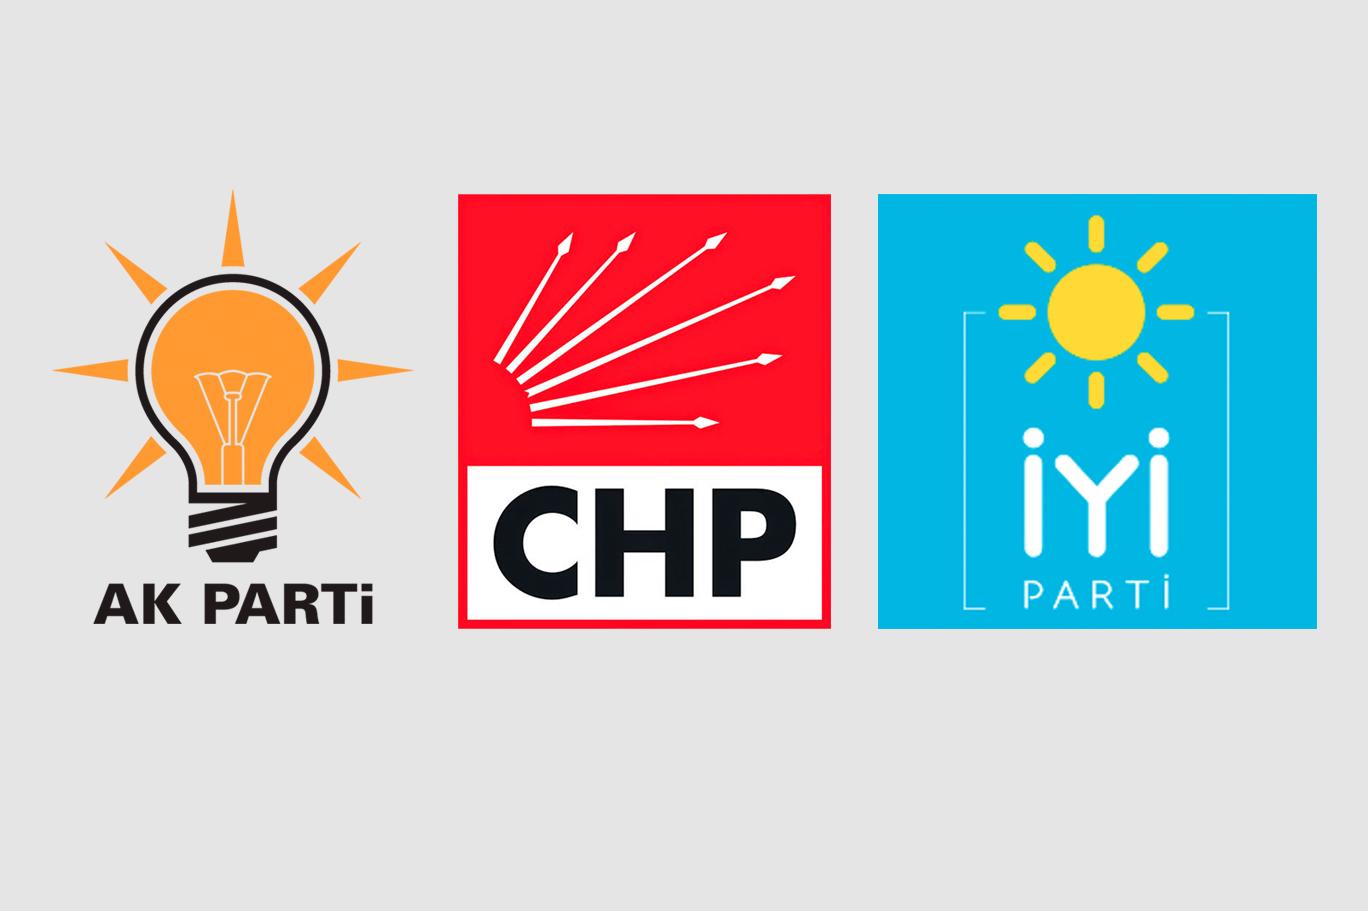 İzmir'de AK Parti, CHP ve İYİ Parti il başkanları bir araya geldi: “Sorunların çözümü konusunda beraber hareket edilecek” | Independent Türkçe